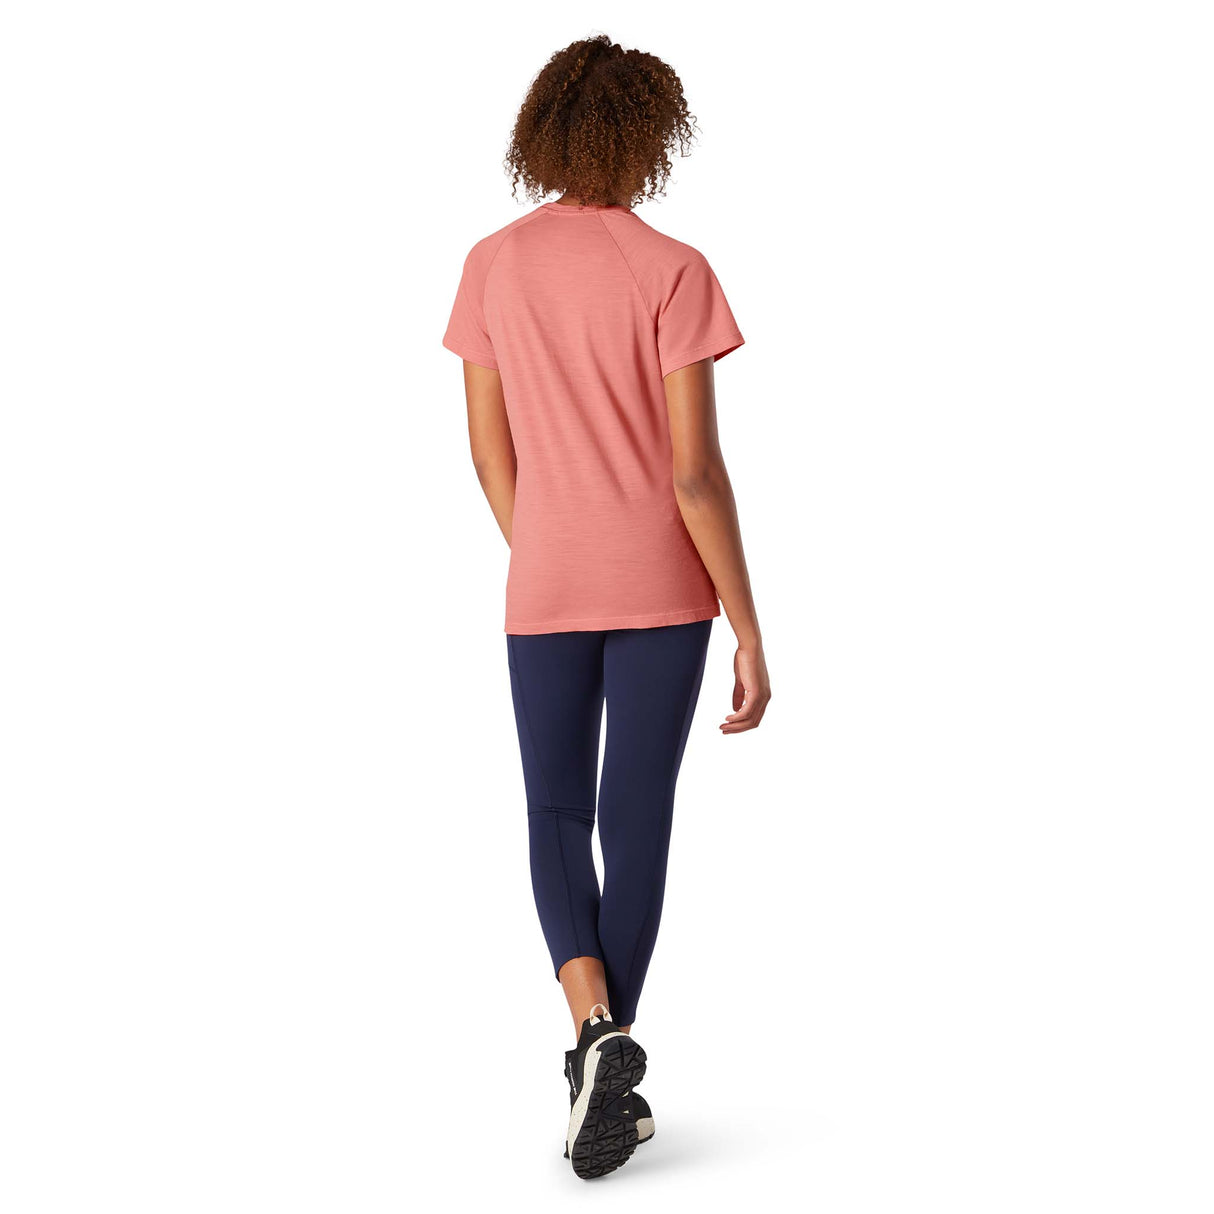 Smartwool Merino 150 T-shirt de base à manches courtes tea rose femme dos